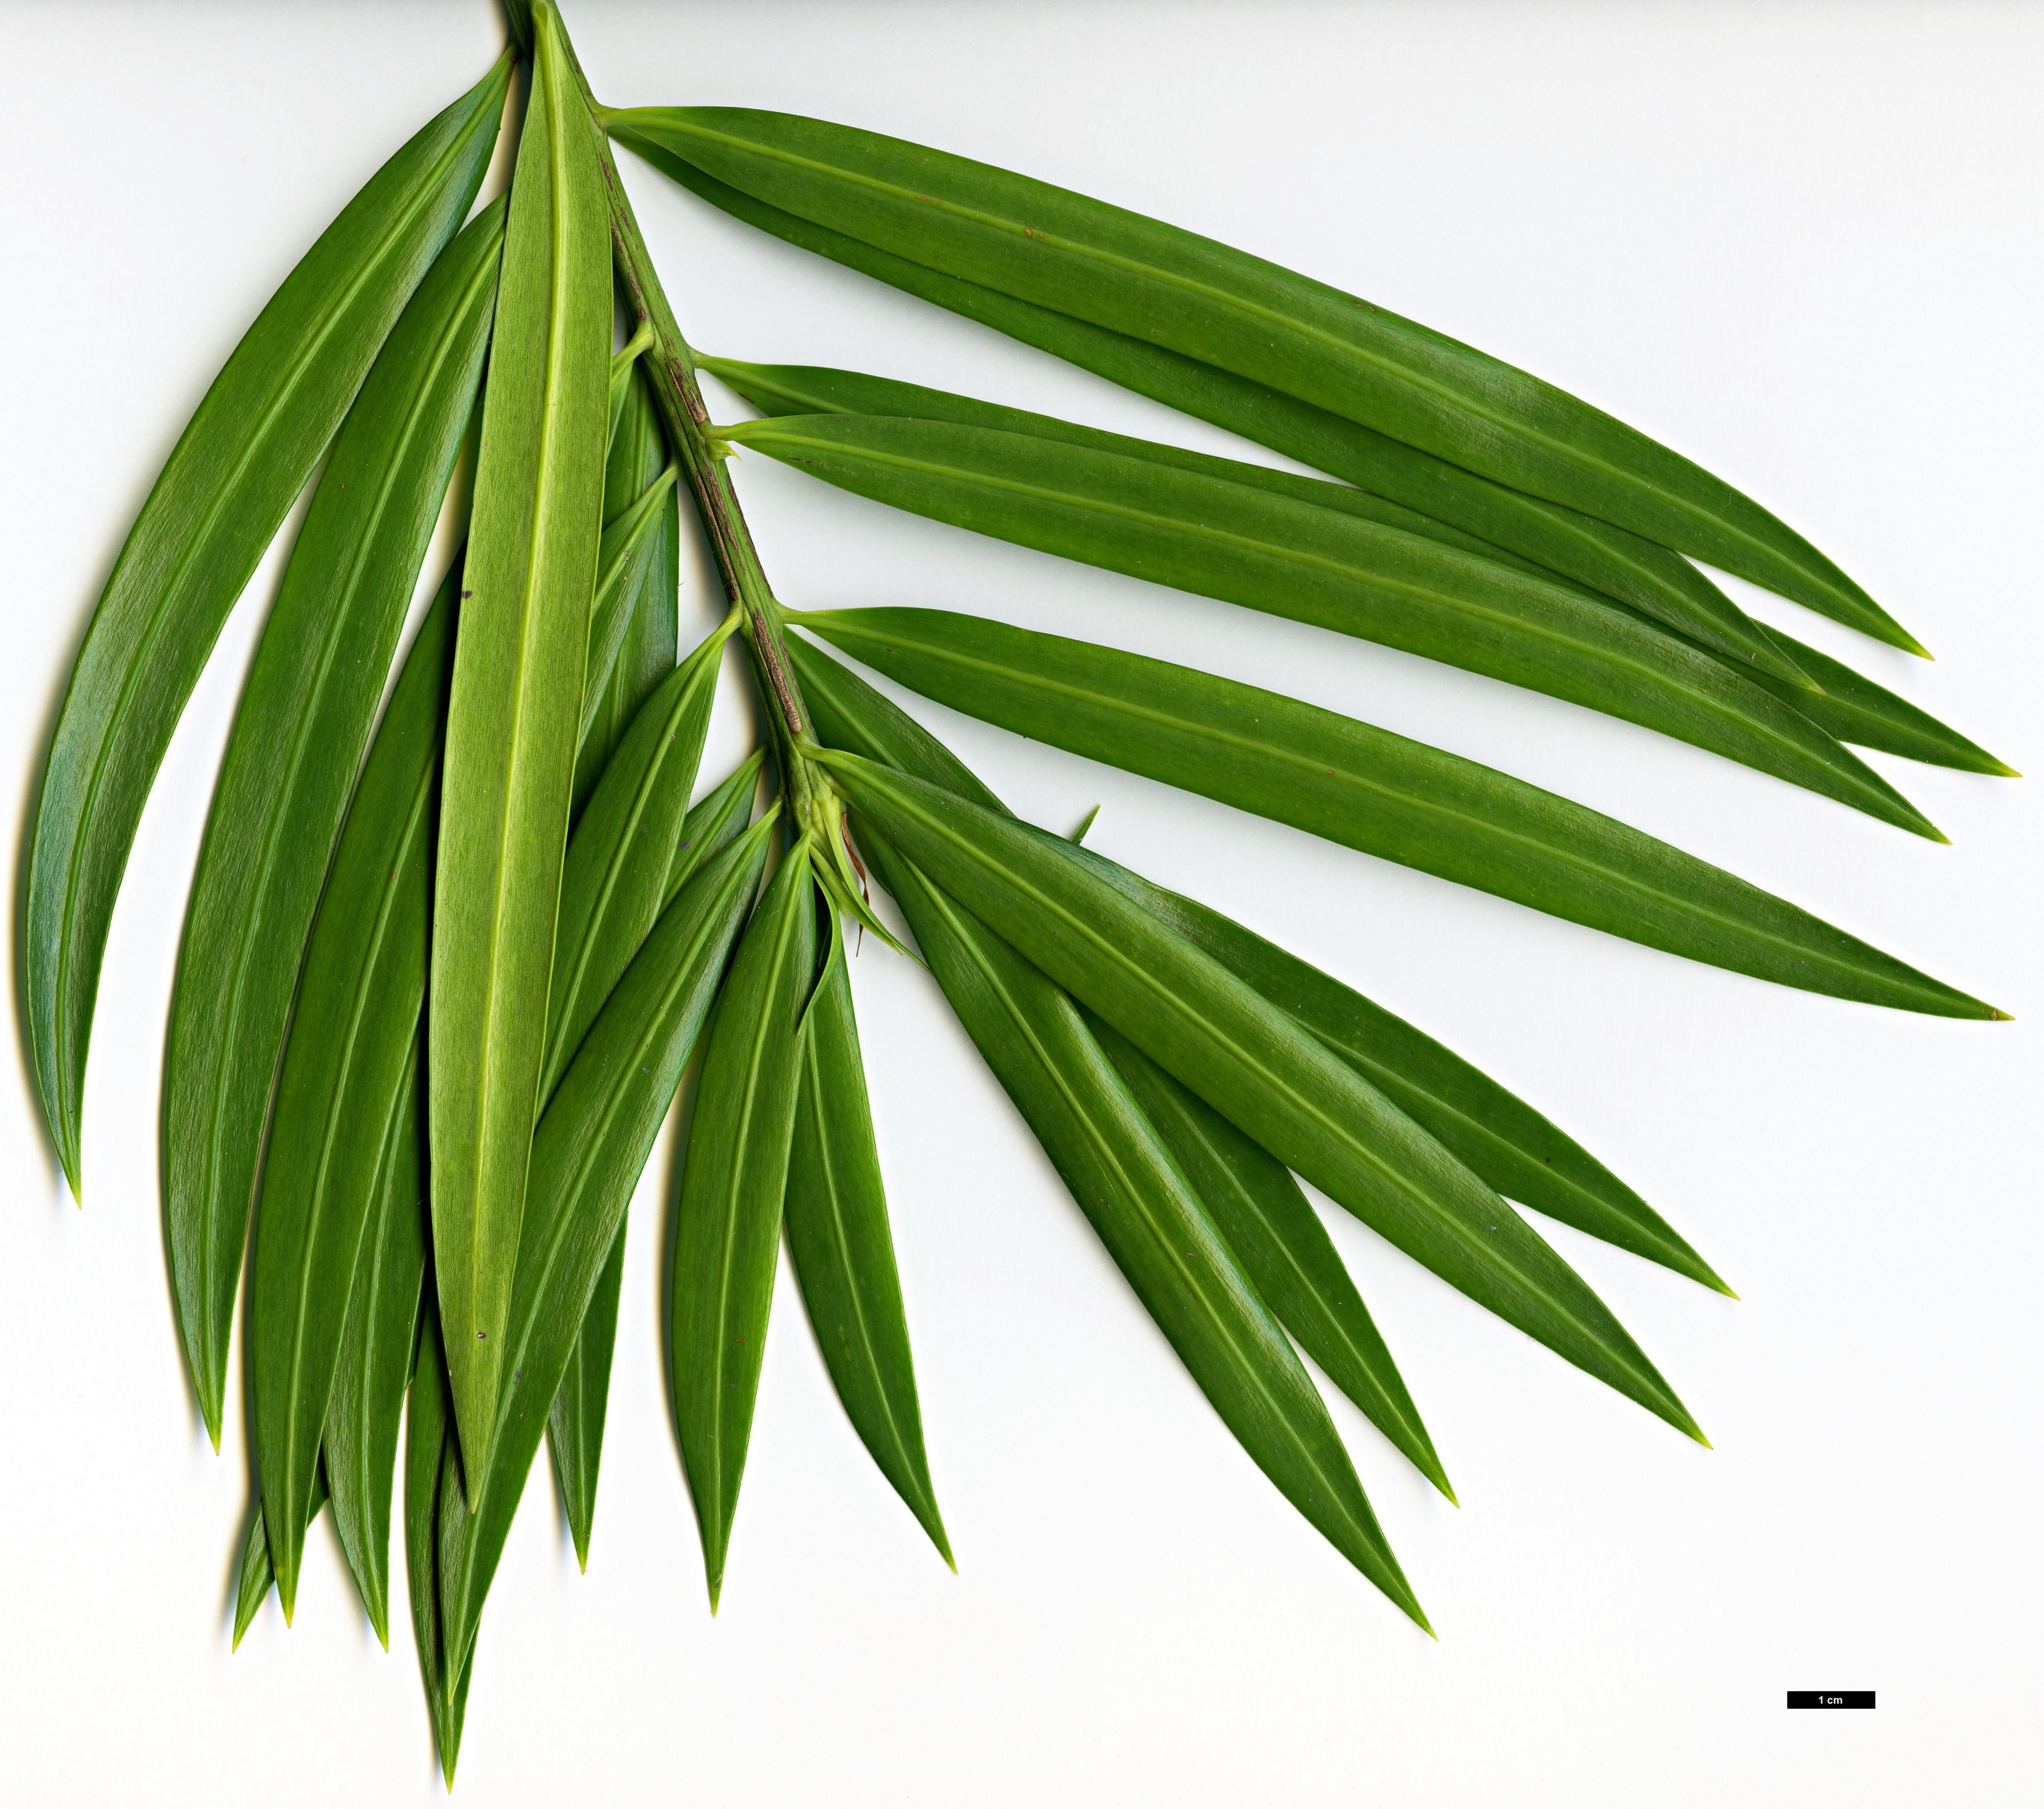 High resolution image: Family: Podocarpaceae - Genus: Podocarpus - Taxon: matudae